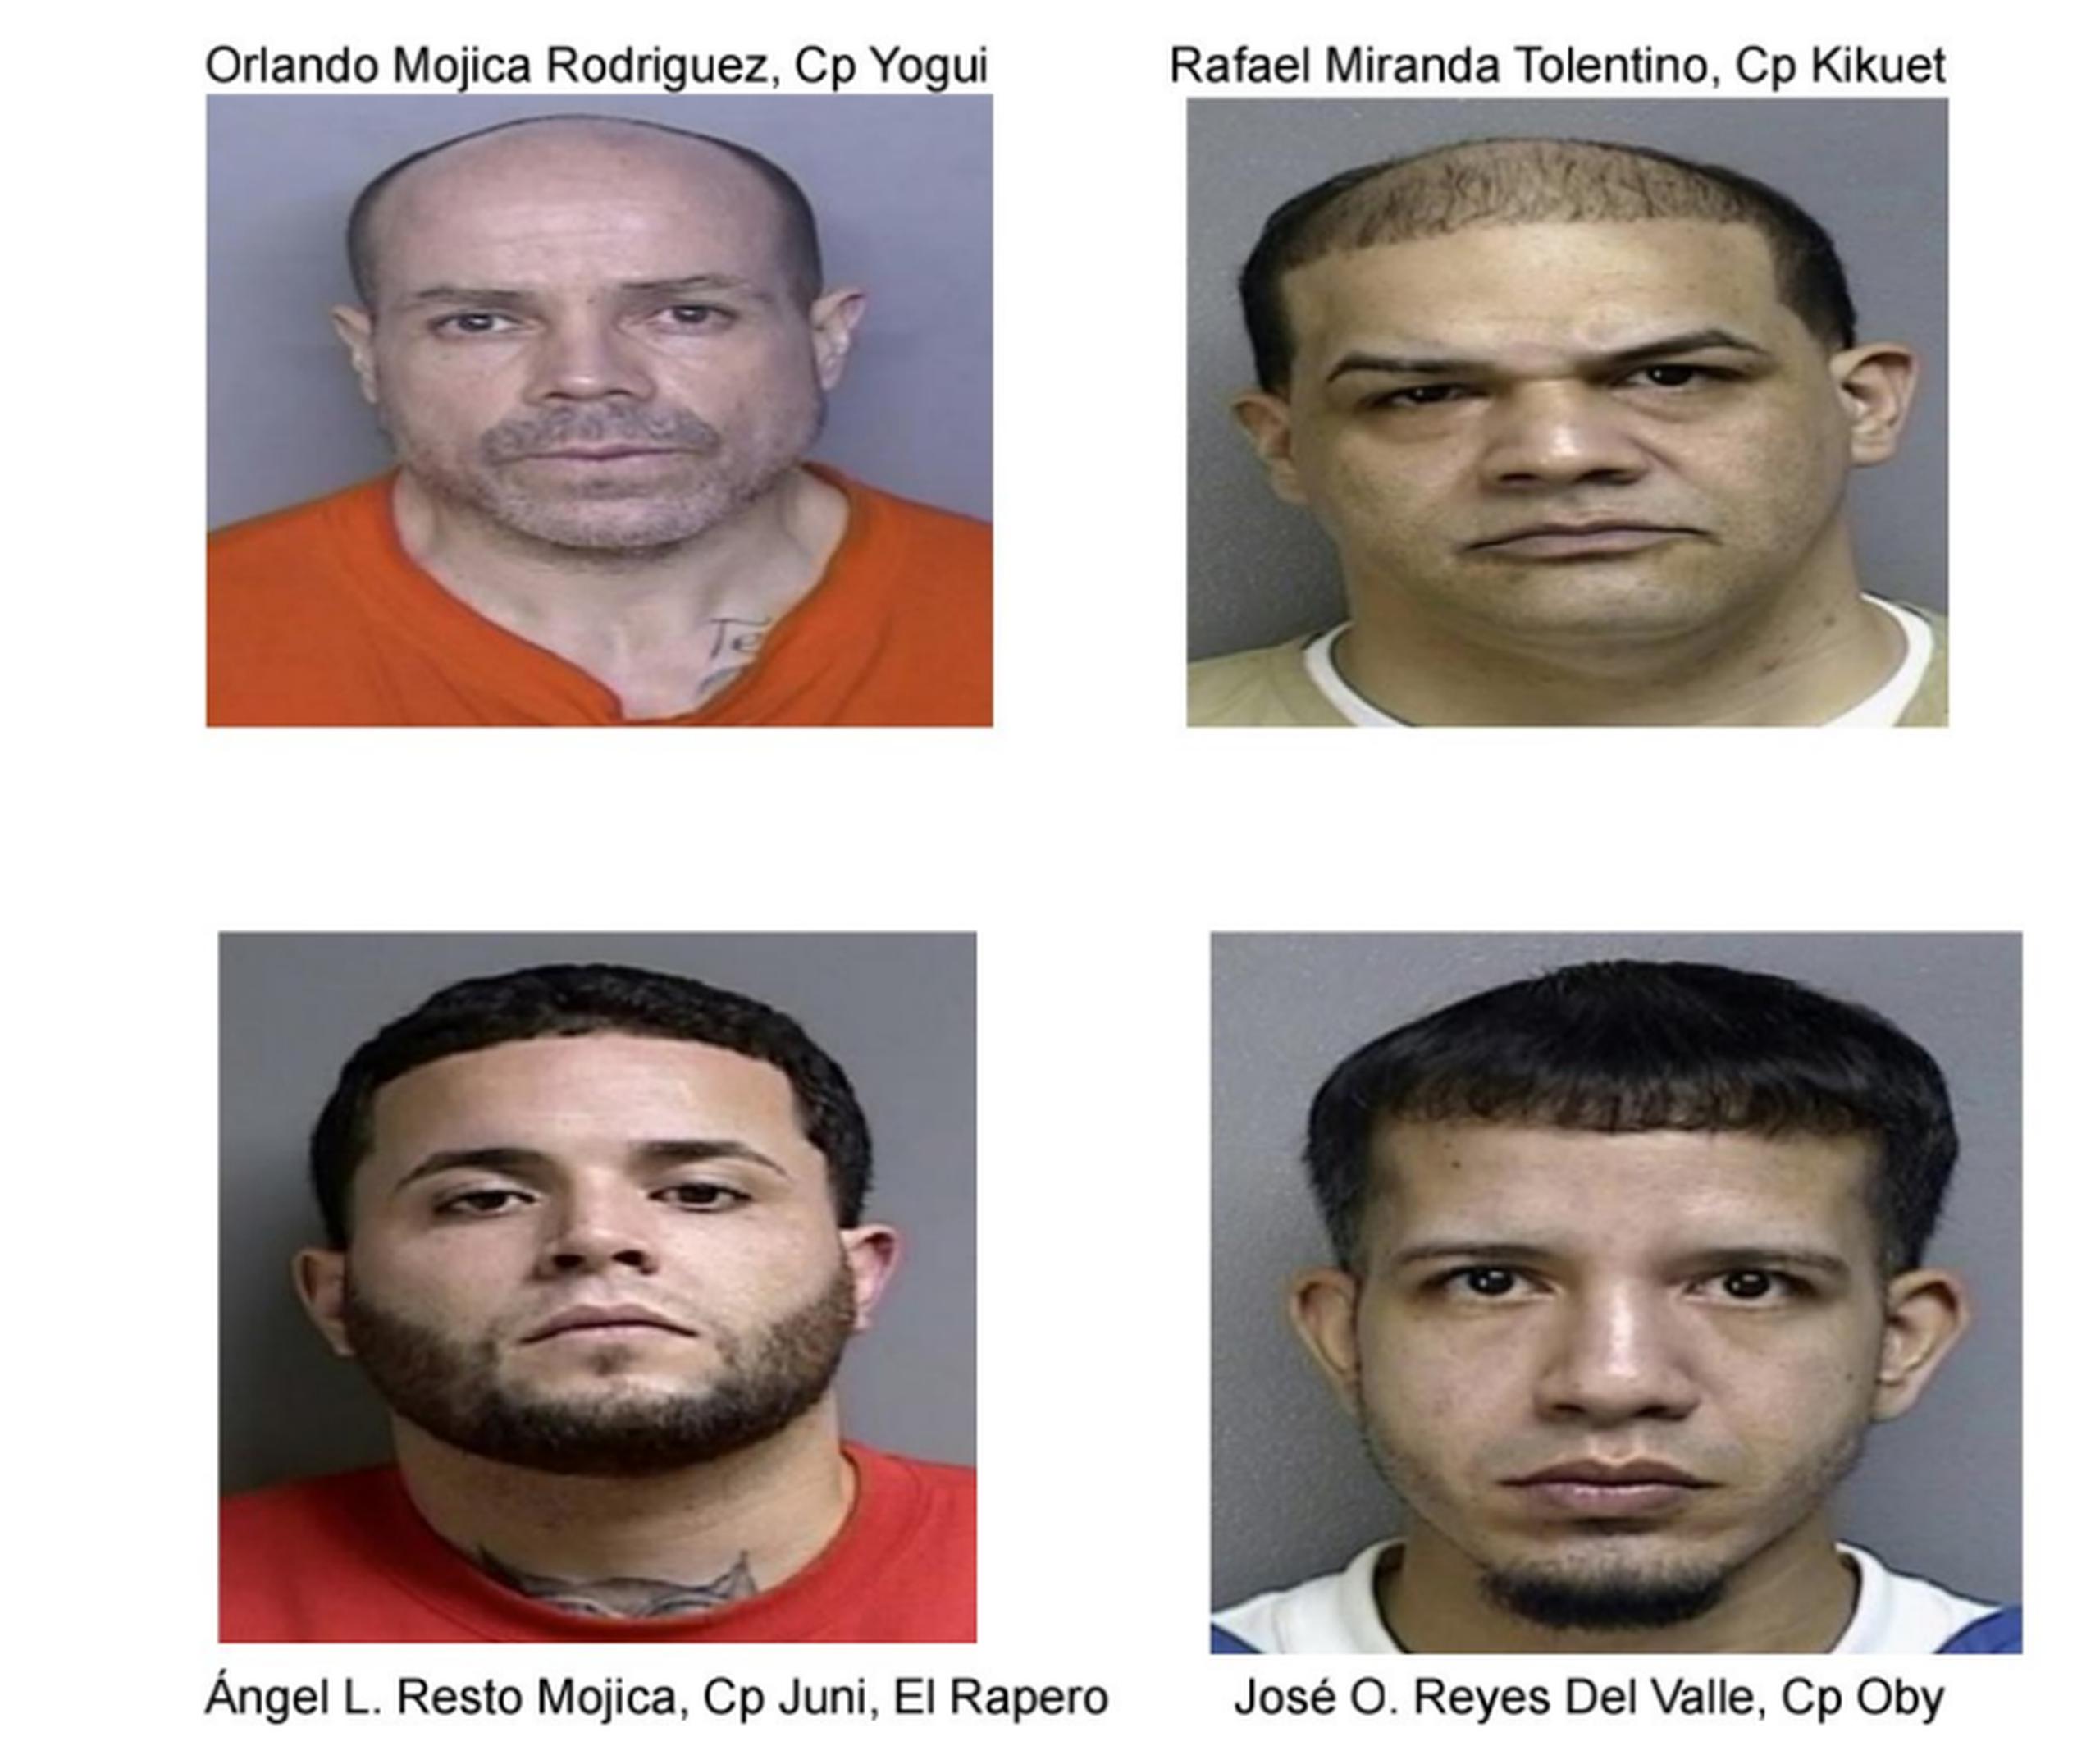 El único de los cuatros acusados que está fugitivo es Ángel Resto Mojica.